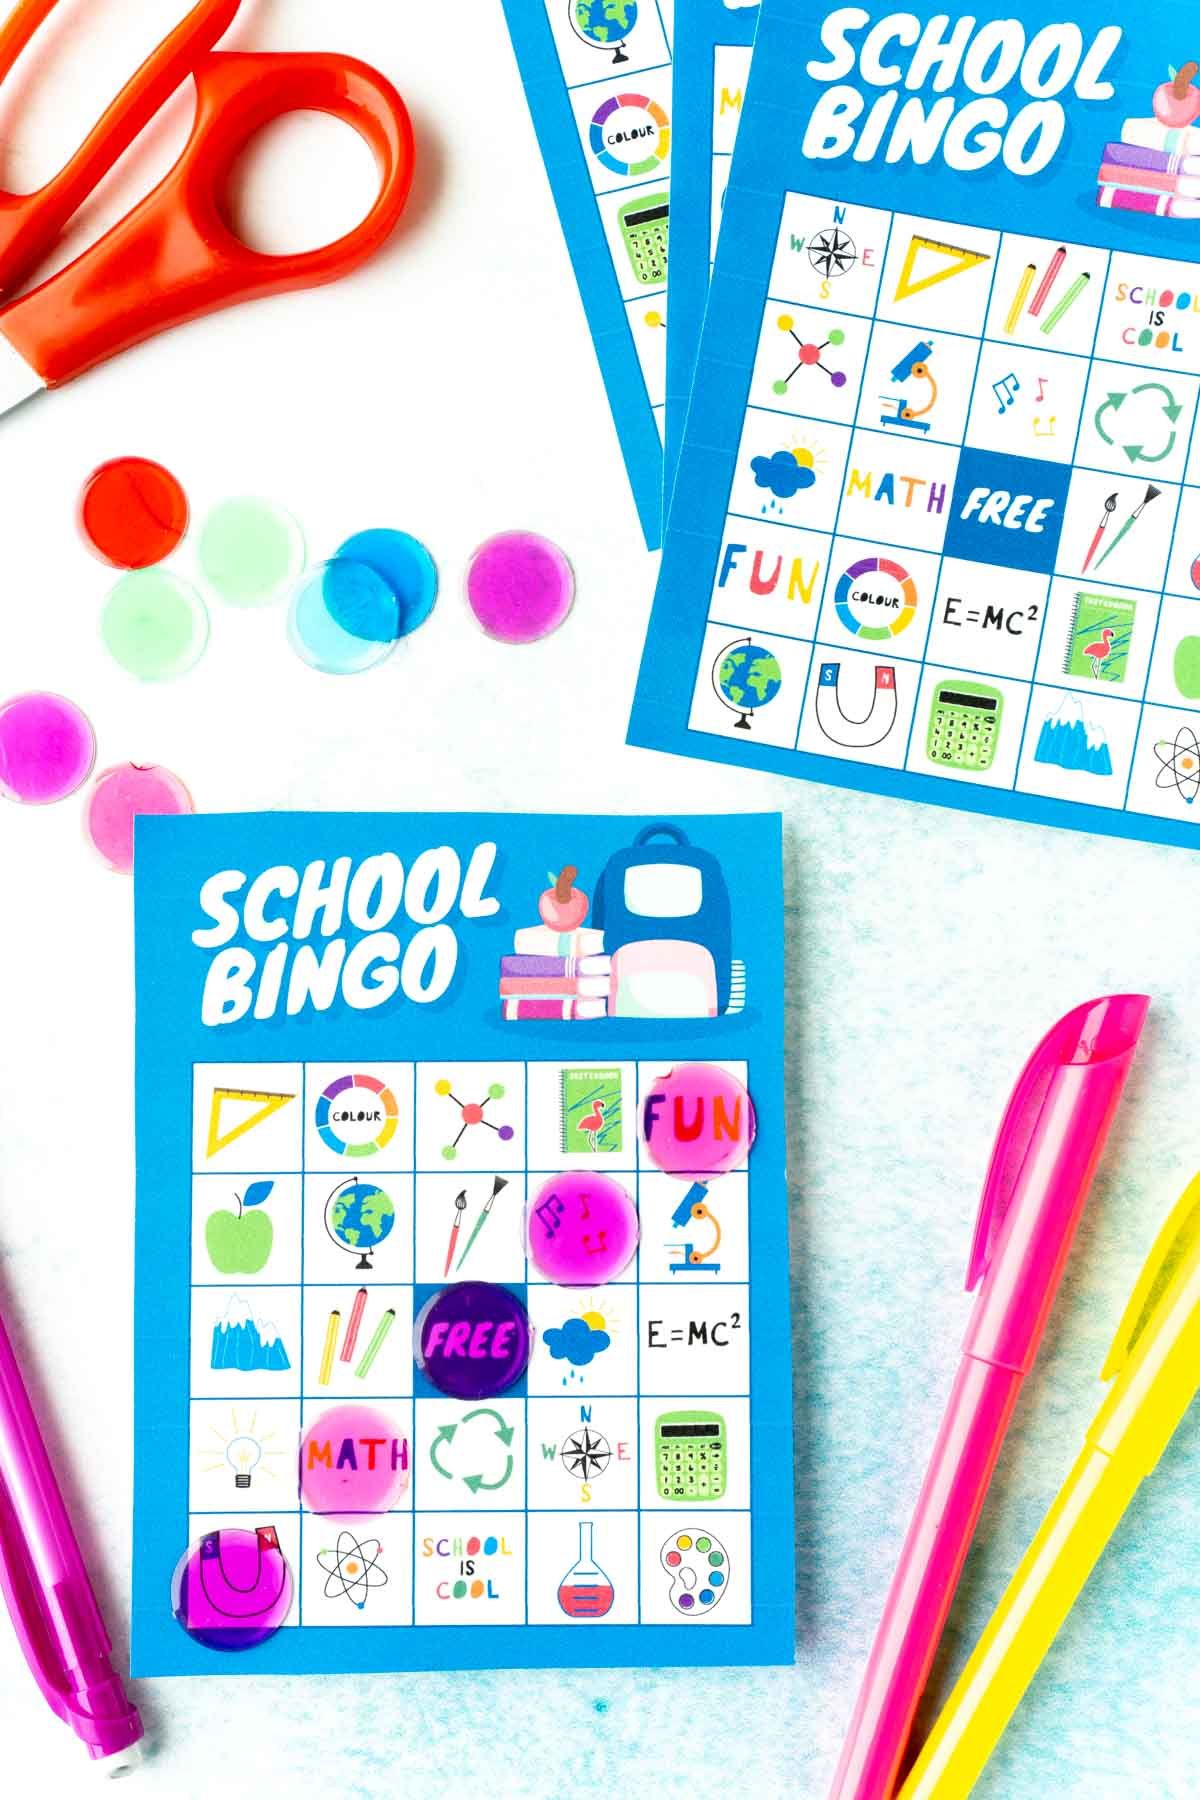 Una targeta blava de bingo escolar amb imatges de l’escola